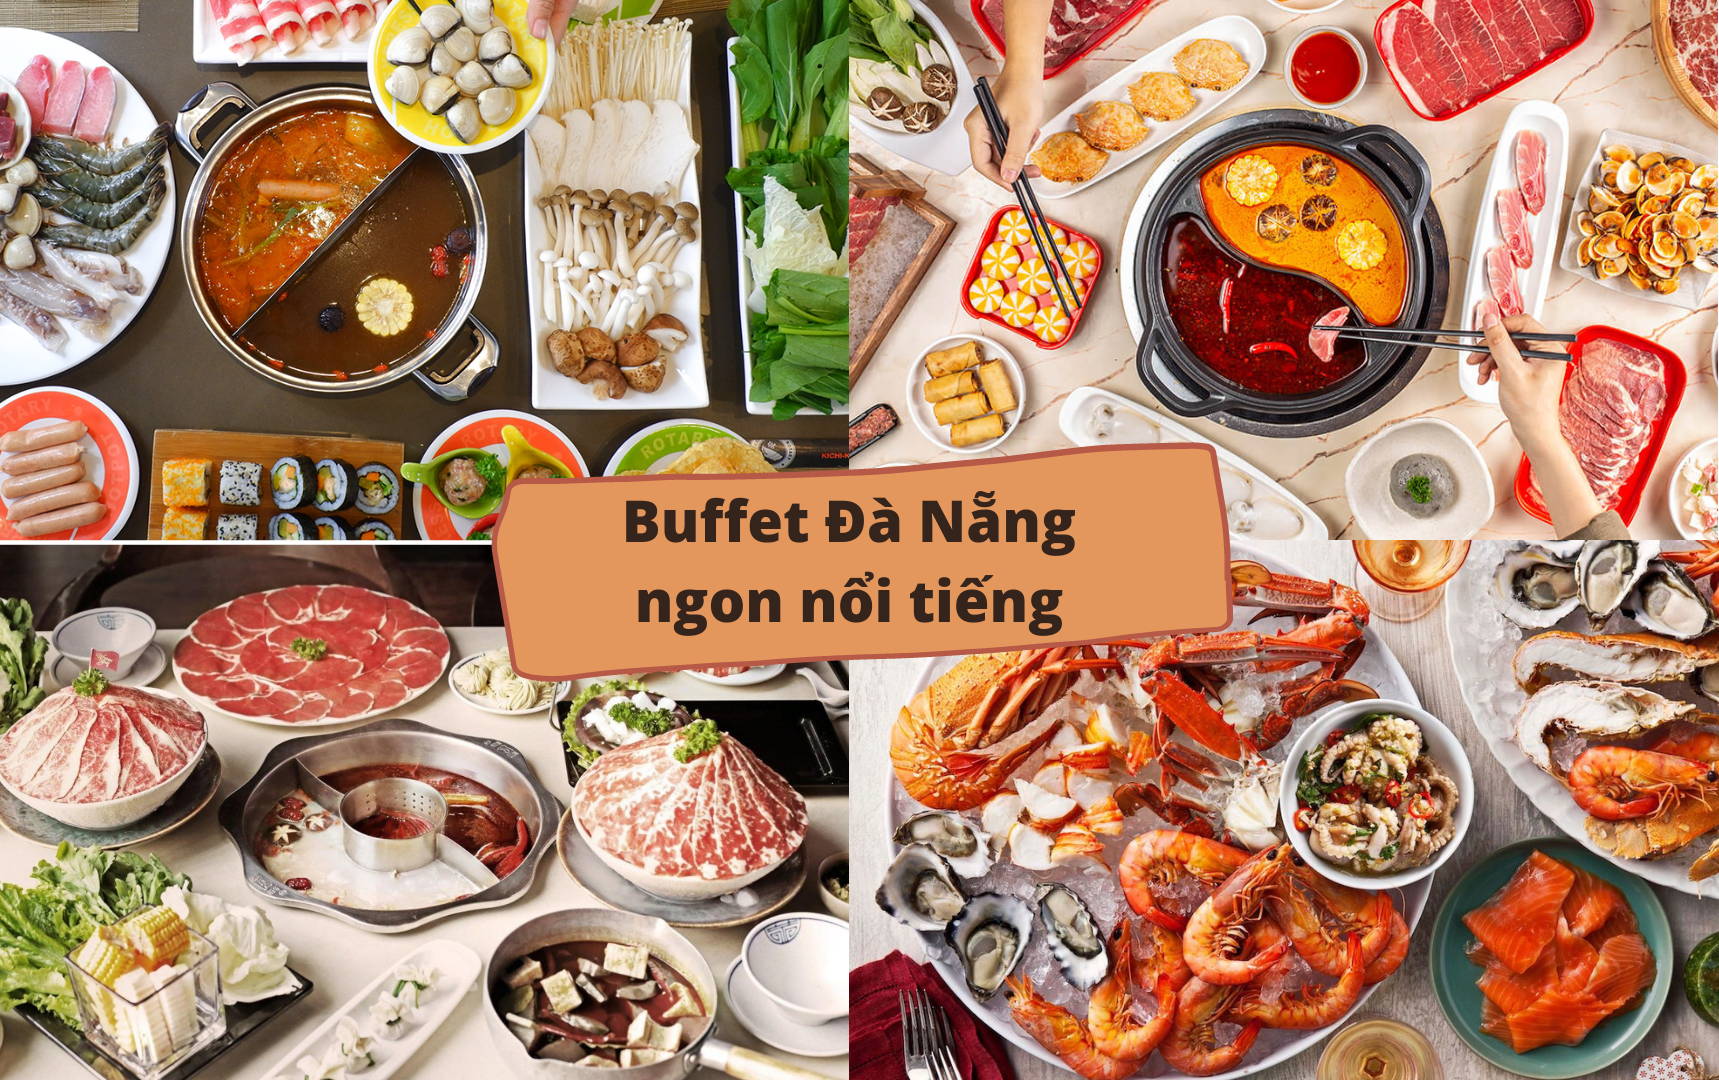 Có những món hải sản nướng nào phổ biến trong ẩm thực Đà Nẵng?
